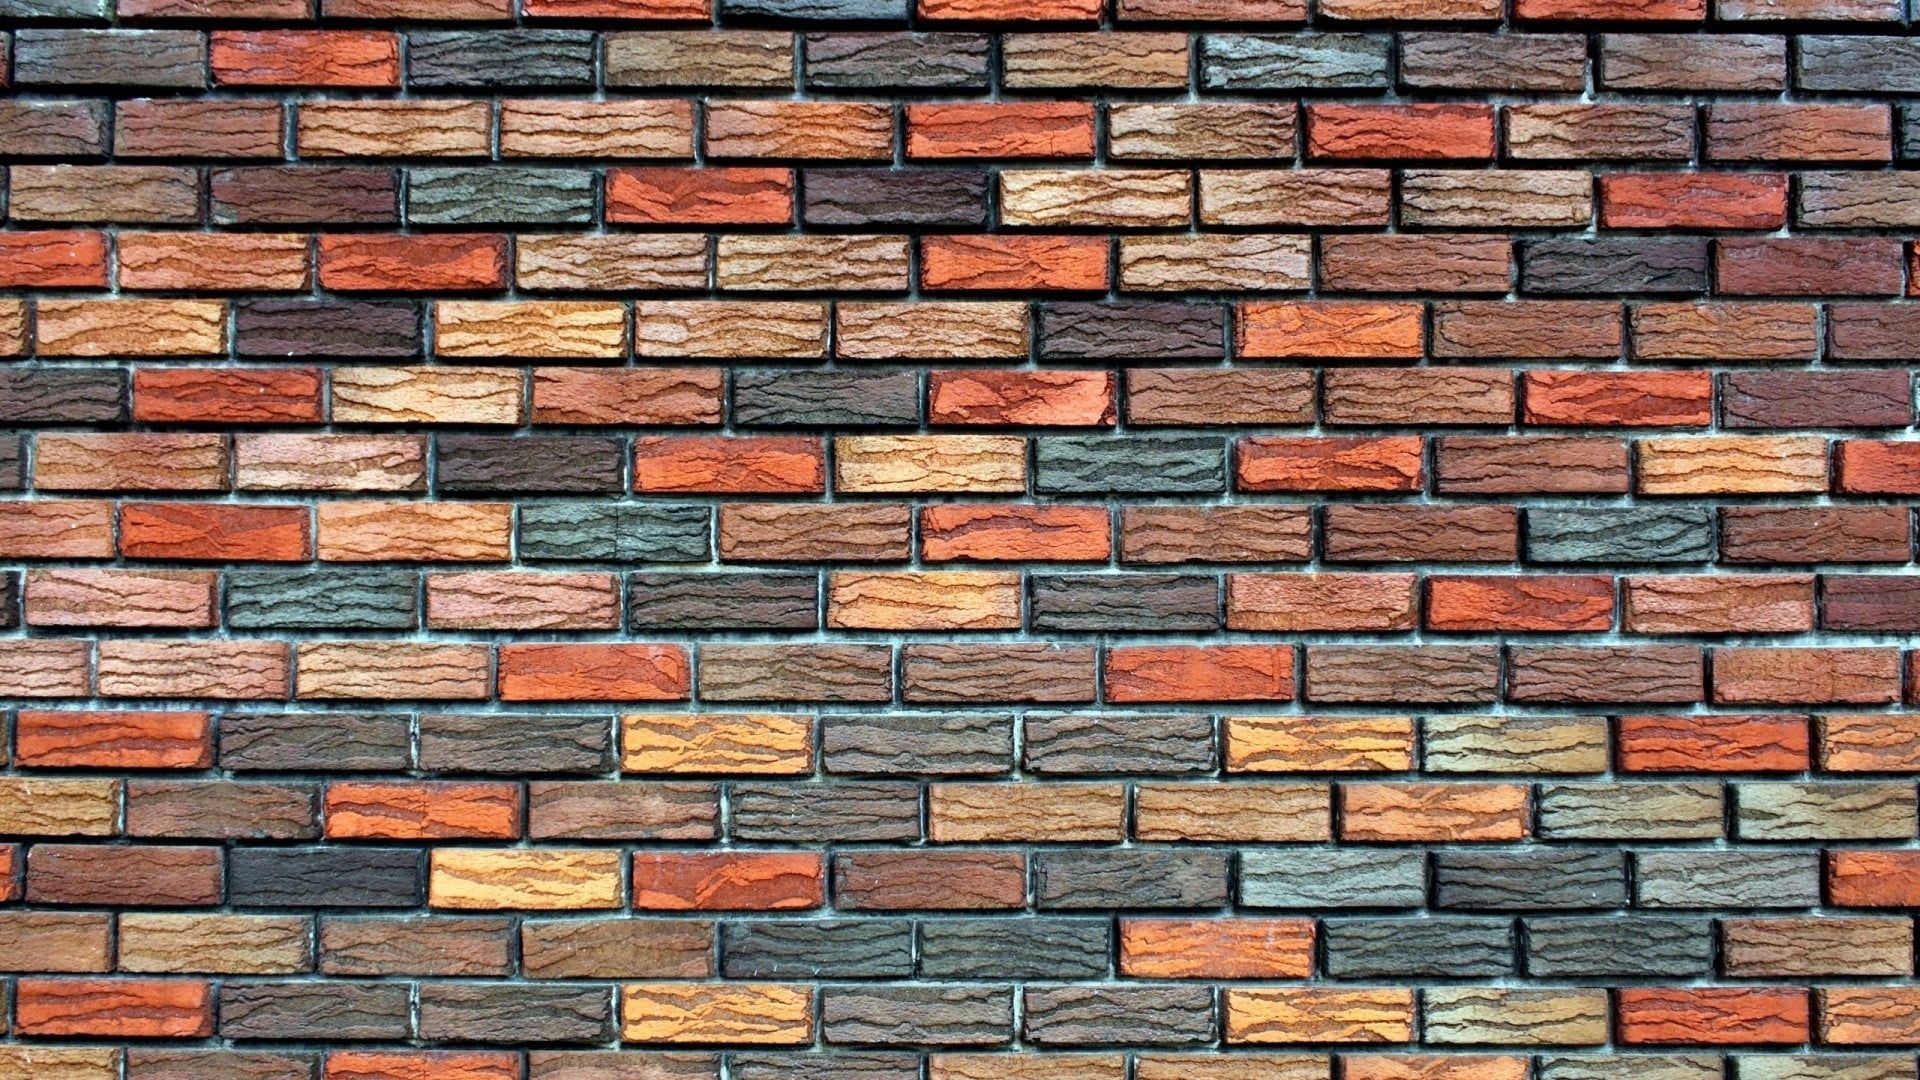 brown, black, and gray brick wall #bricks #texture #background #wall P #wallpaper #hdwallp. Brick wallpaper hd, Brick wall wallpaper, Brick wall wallpaper hd